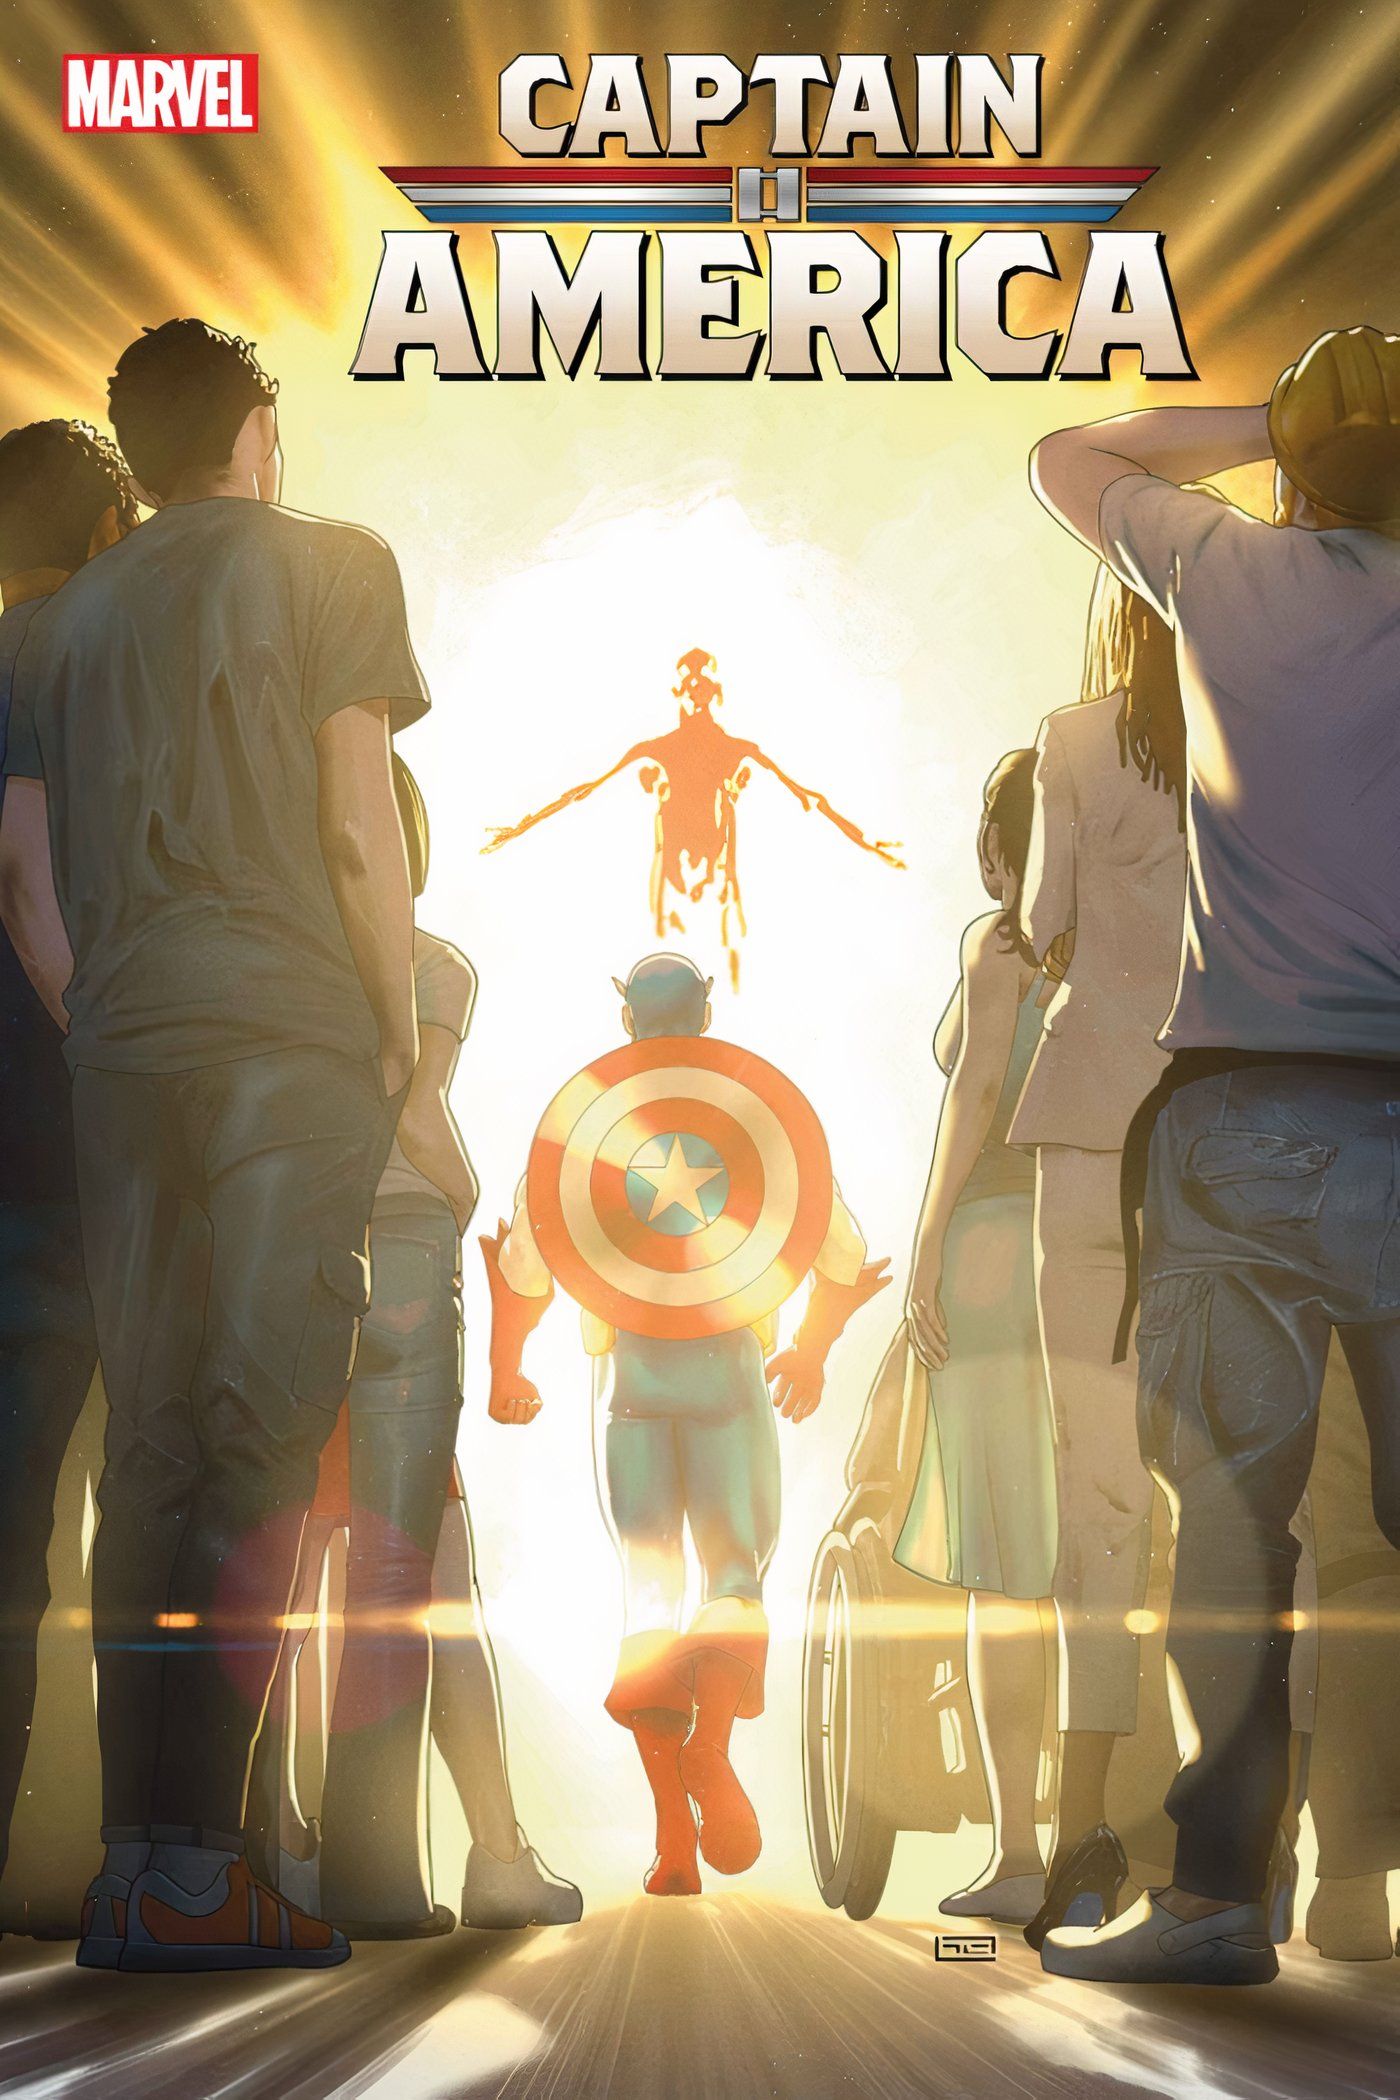 Capa principal do Capitão América #11